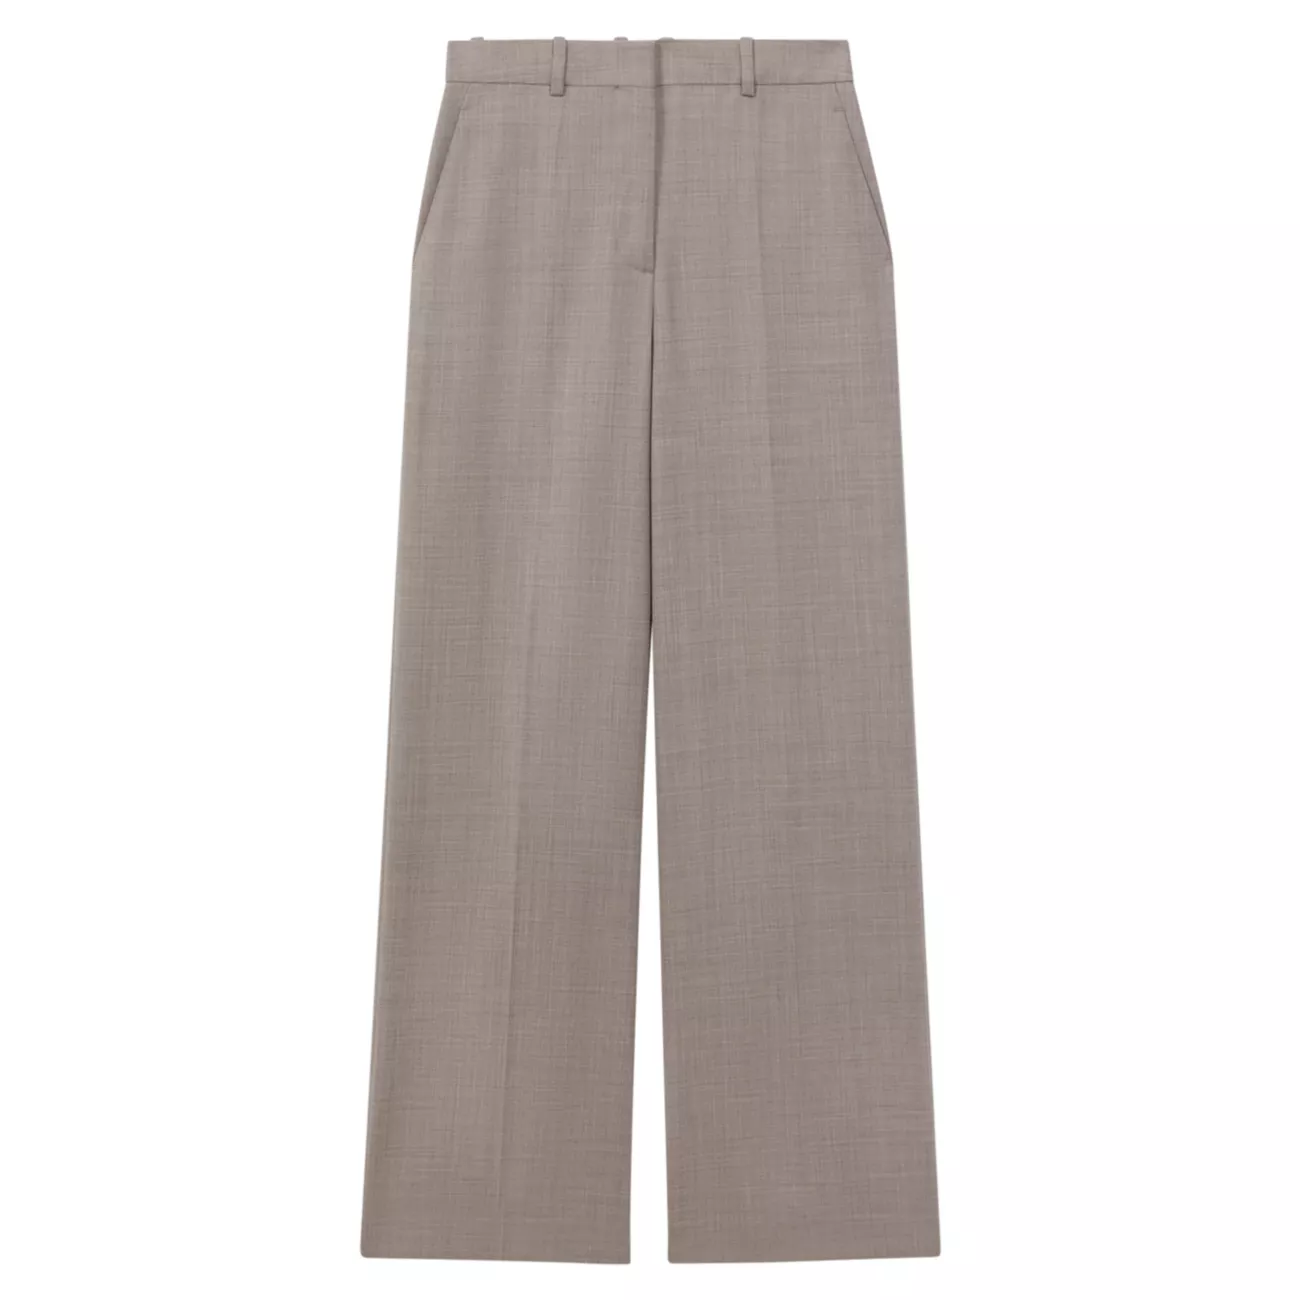 Широкие брюки из эластичной шерсти орехового цвета REISS